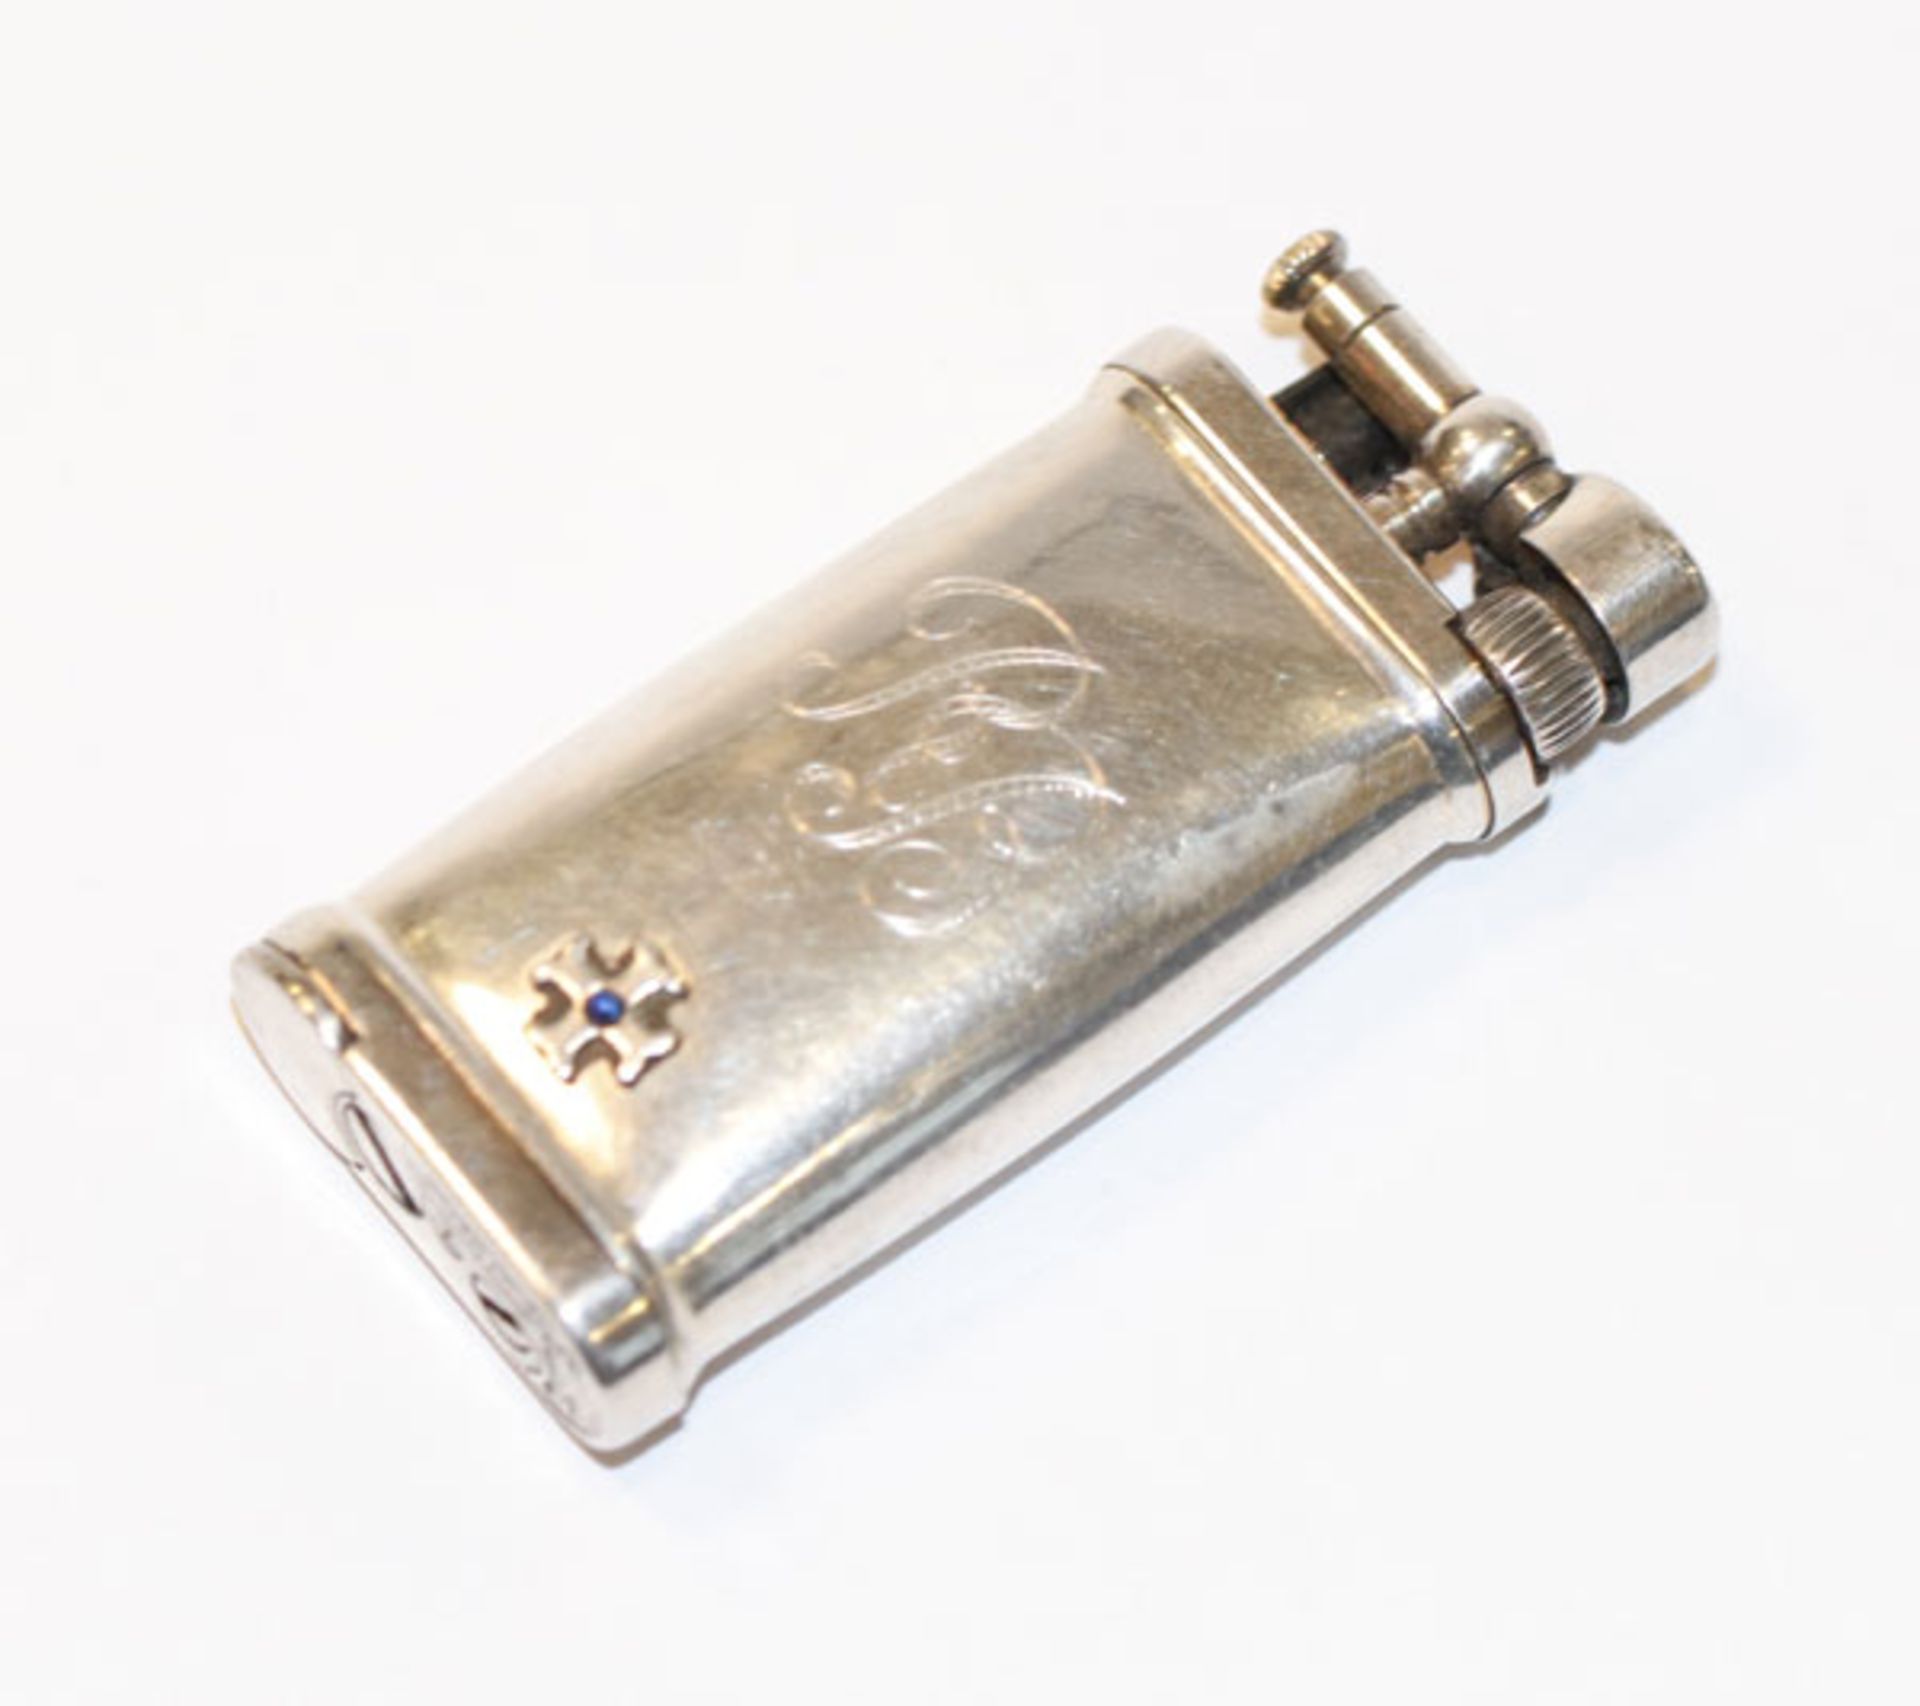 Sillem's IM Corona 925 Sterlingsilber Feuerzeug der Old Boy Klassiker, mit Monogrammgravur RB,